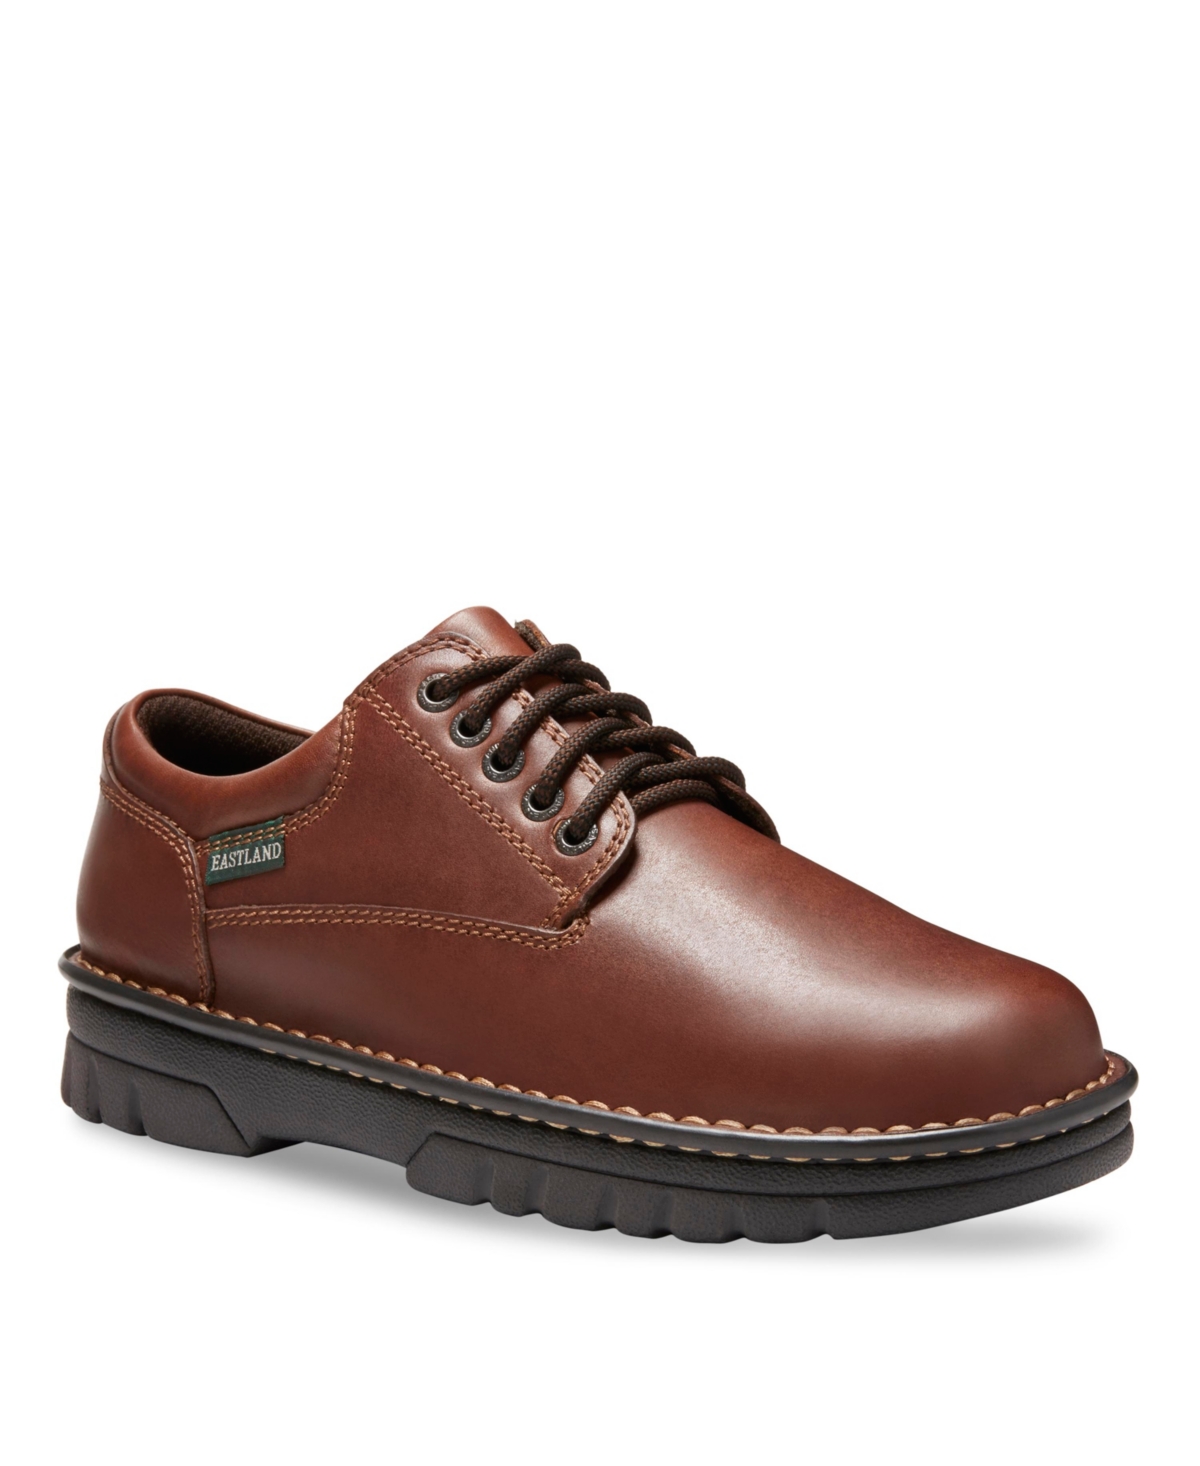 Men's Plainview Oxford Shoes - Brown